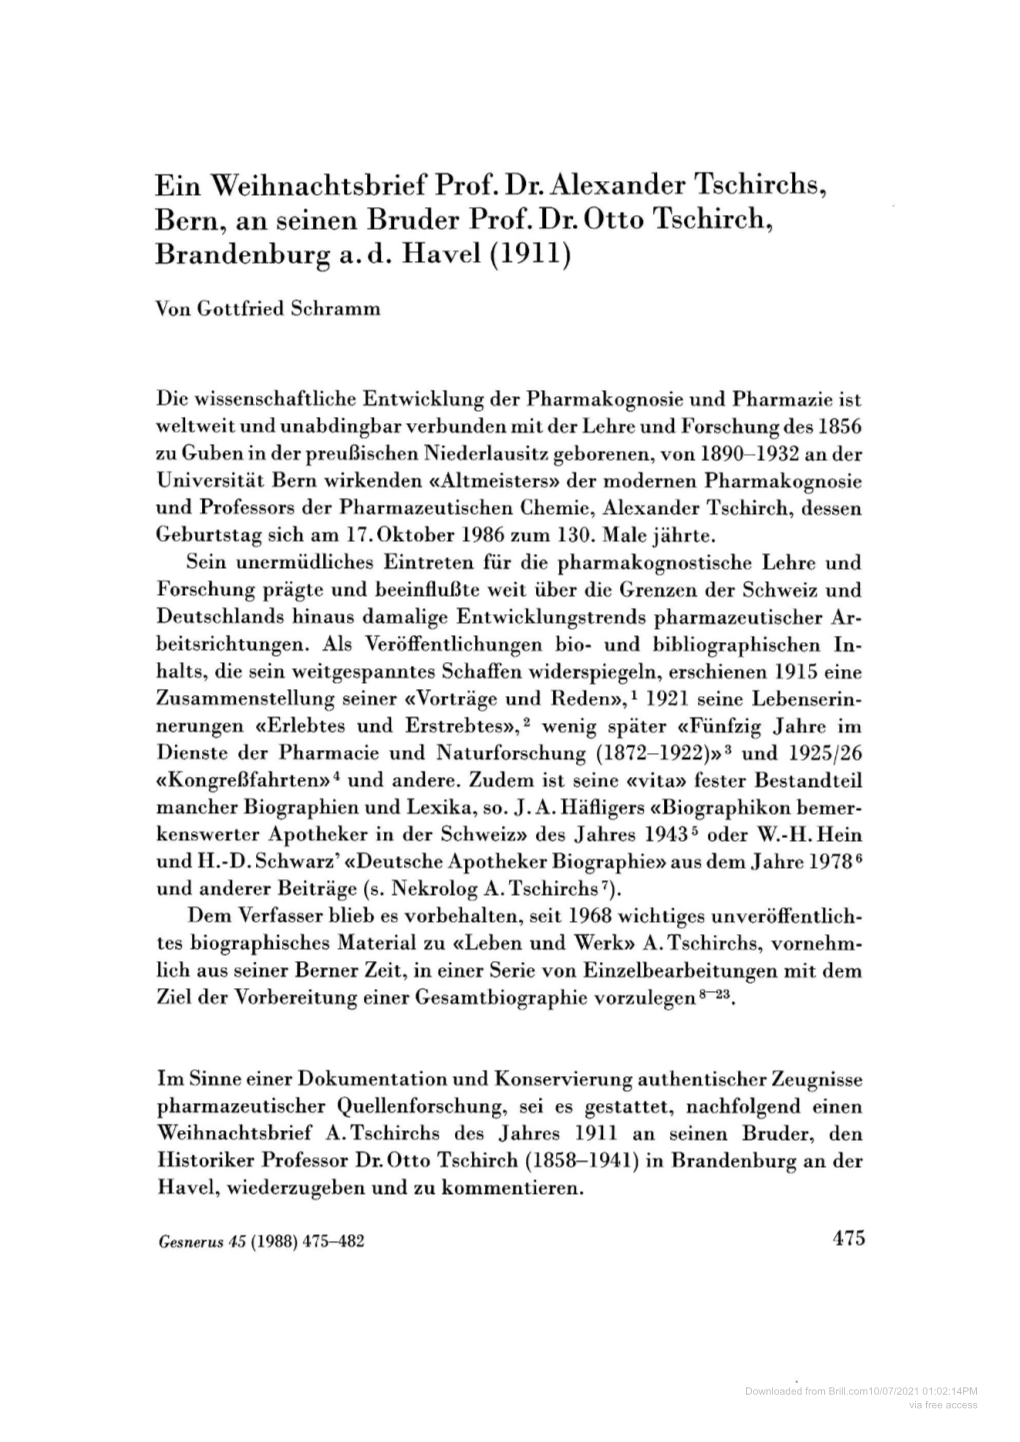 Ein Weihnachtsbrief Prof. Dr. Alexander Tschirchs, Bern, an Seinen Bruder Prof